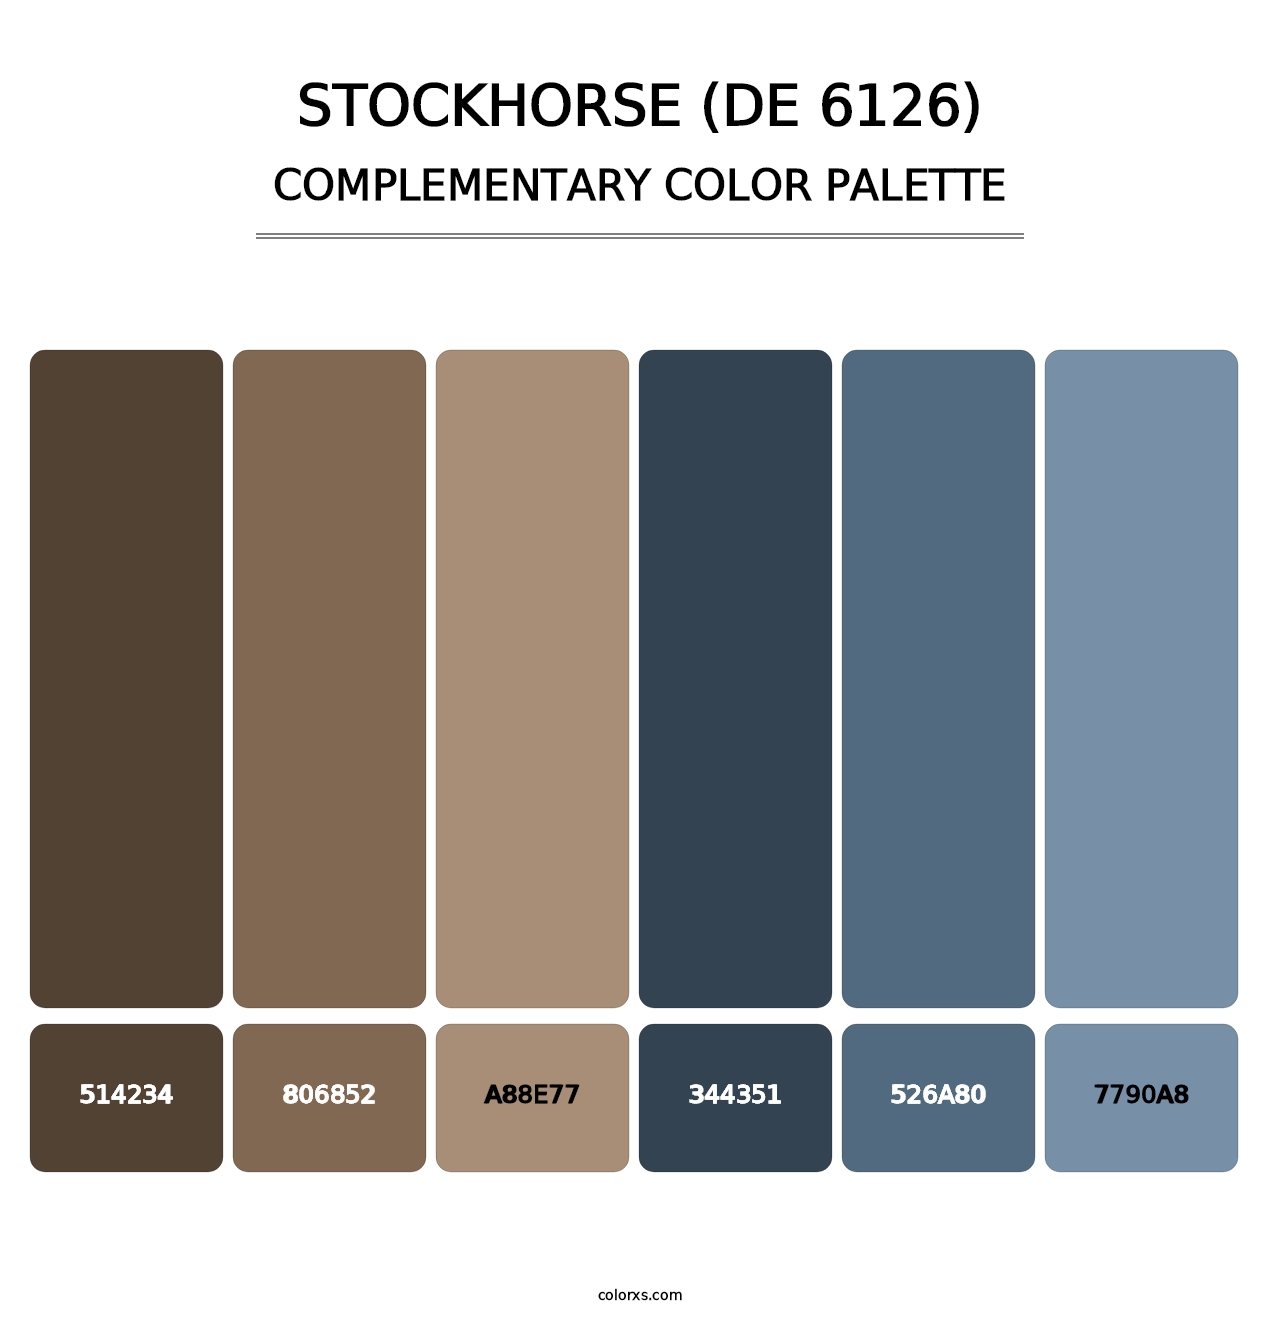 Stockhorse (DE 6126) - Complementary Color Palette